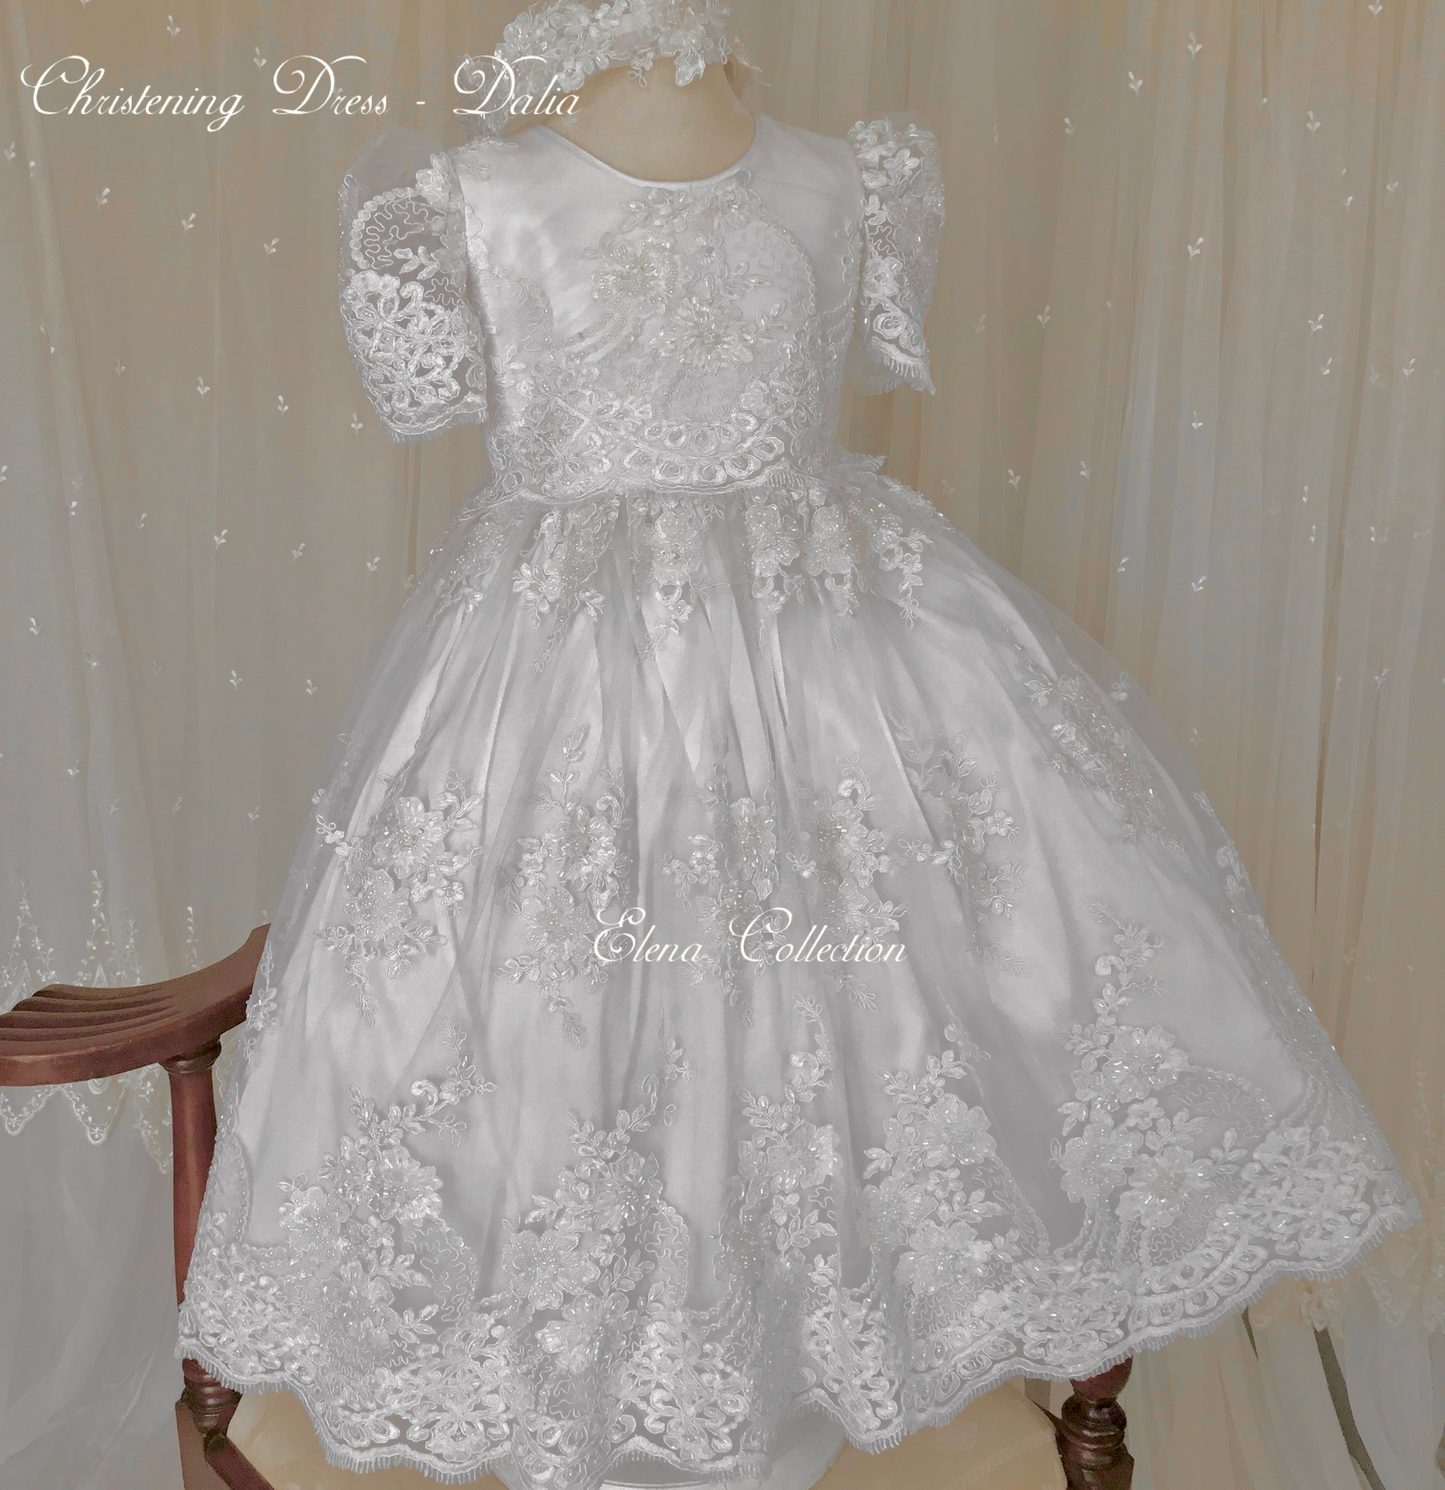 Christening Lace Dress - Dalia